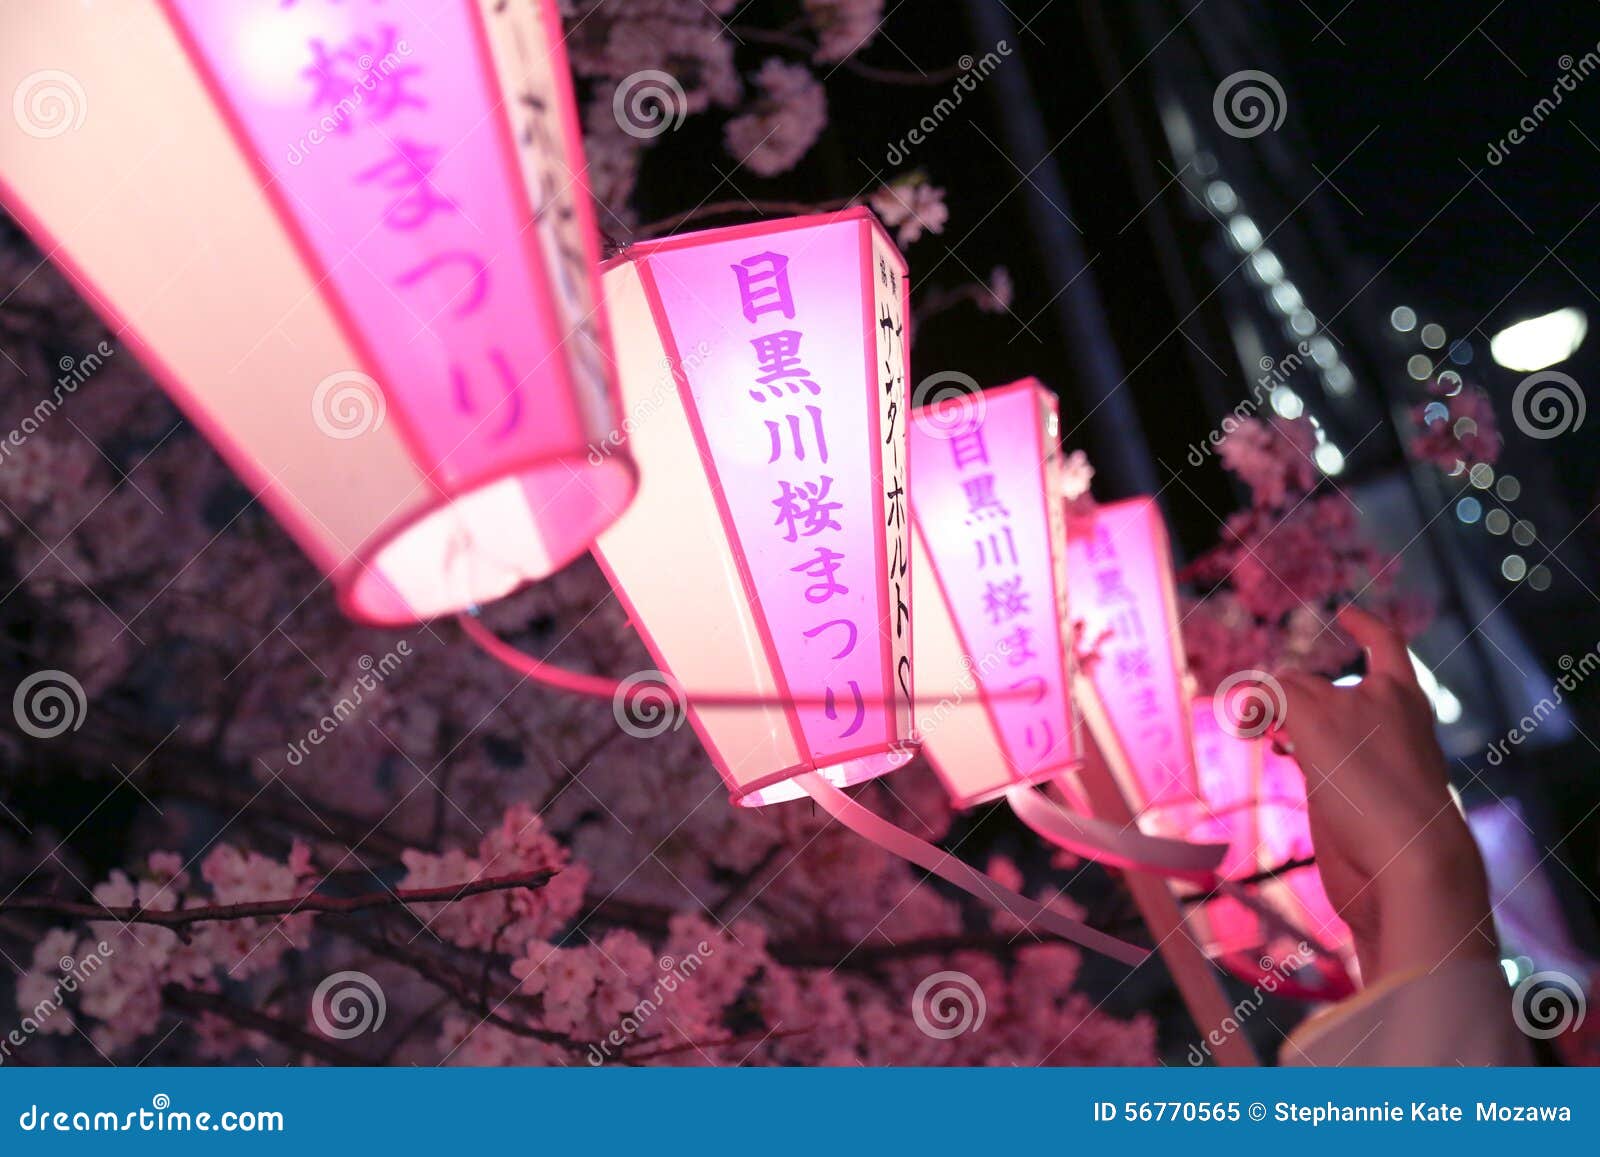 Lámpara japonesa en rosa: Cherry Blossoms Festival. Lámpara japonesa que lee a Megurogawa Sakura Matsuri que signifique a Cherry Blossoms Festival en el río de Meguro Una ubicación famosa para que turistas y locals vayan visión de la flor de cerezo